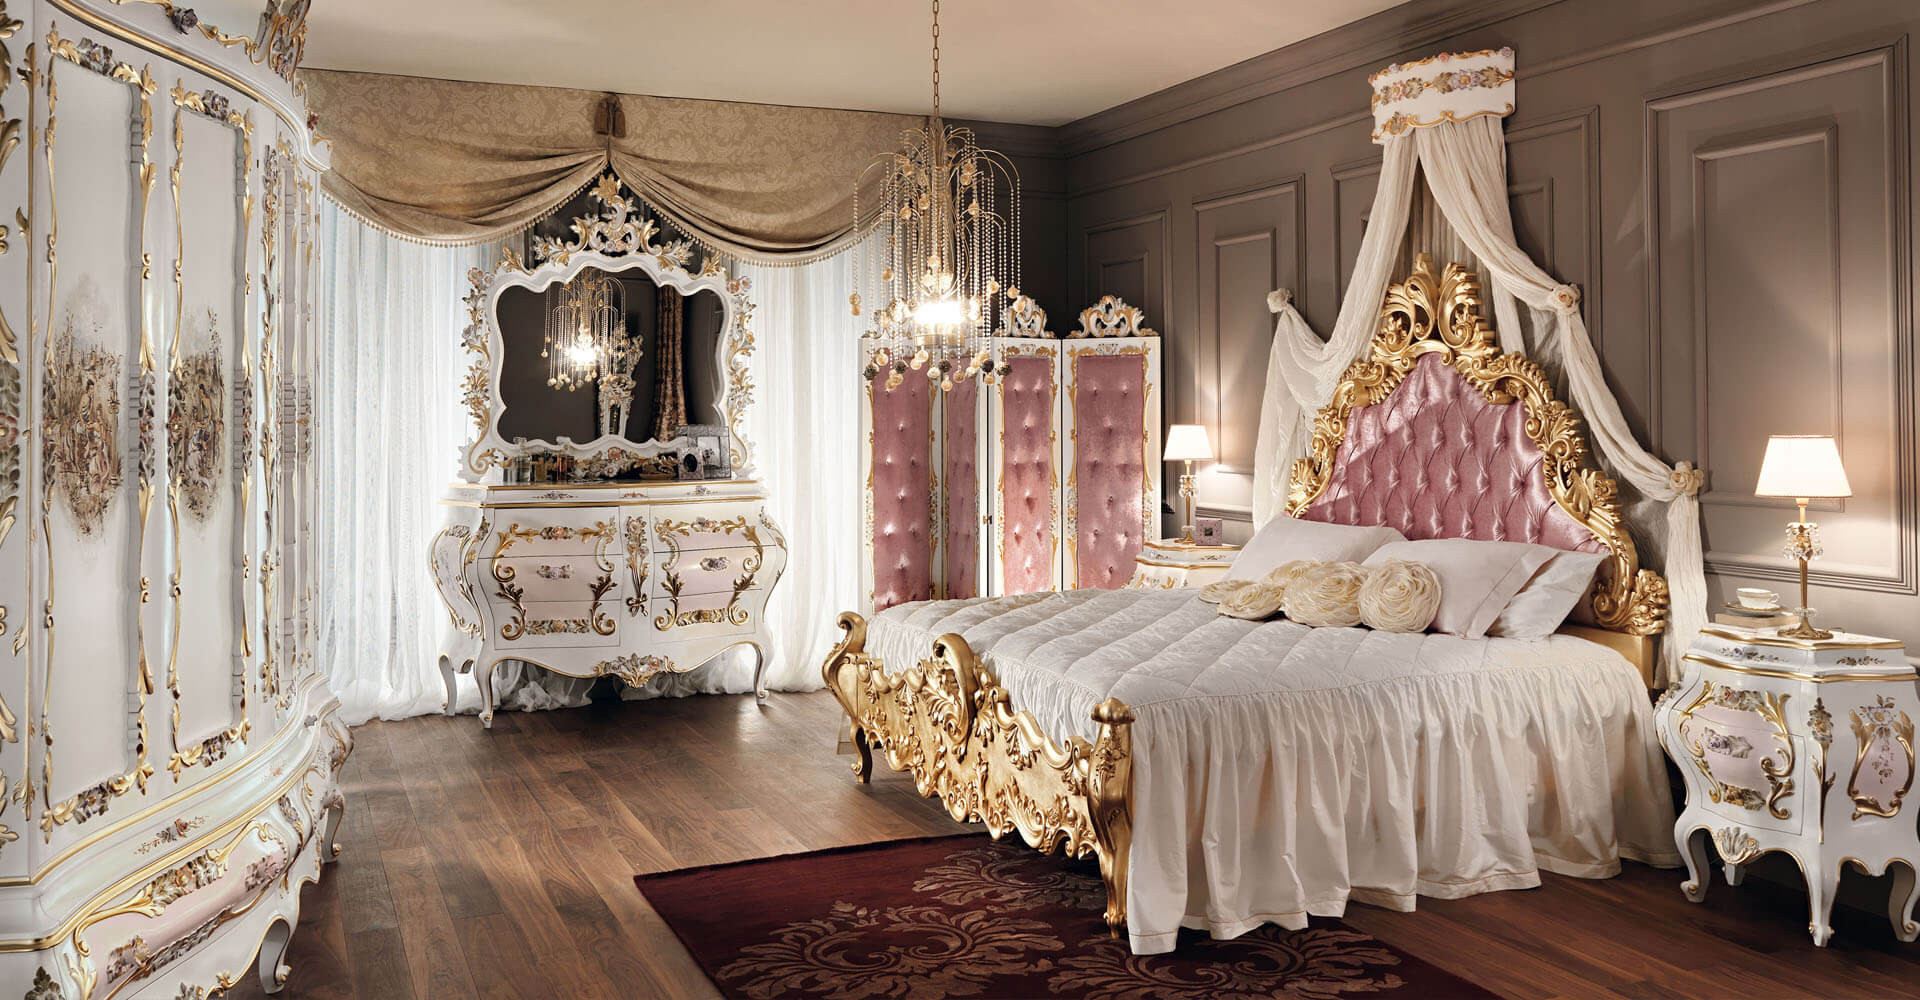 Luxury Master Bedroom Furniture
 138 Luxury Master Bedroom Designs & Ideas s